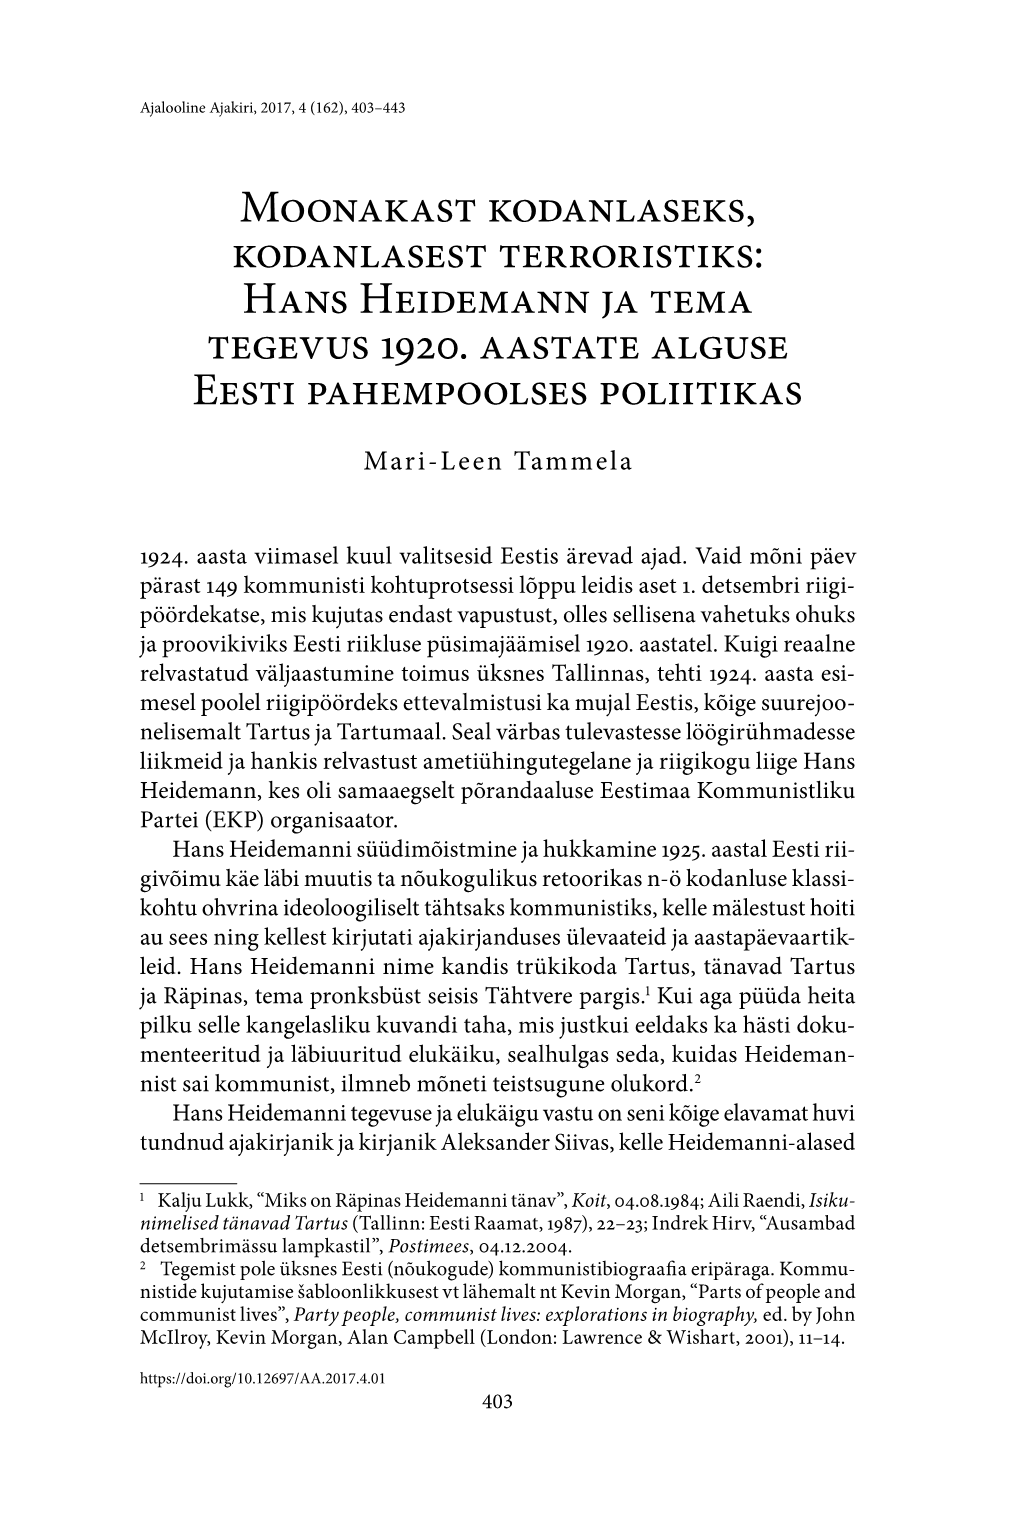 Moonakast Kodanlaseks, Kodanlasest Terroristiks: Hans Heidemann Ja Tema Tegevus 1920